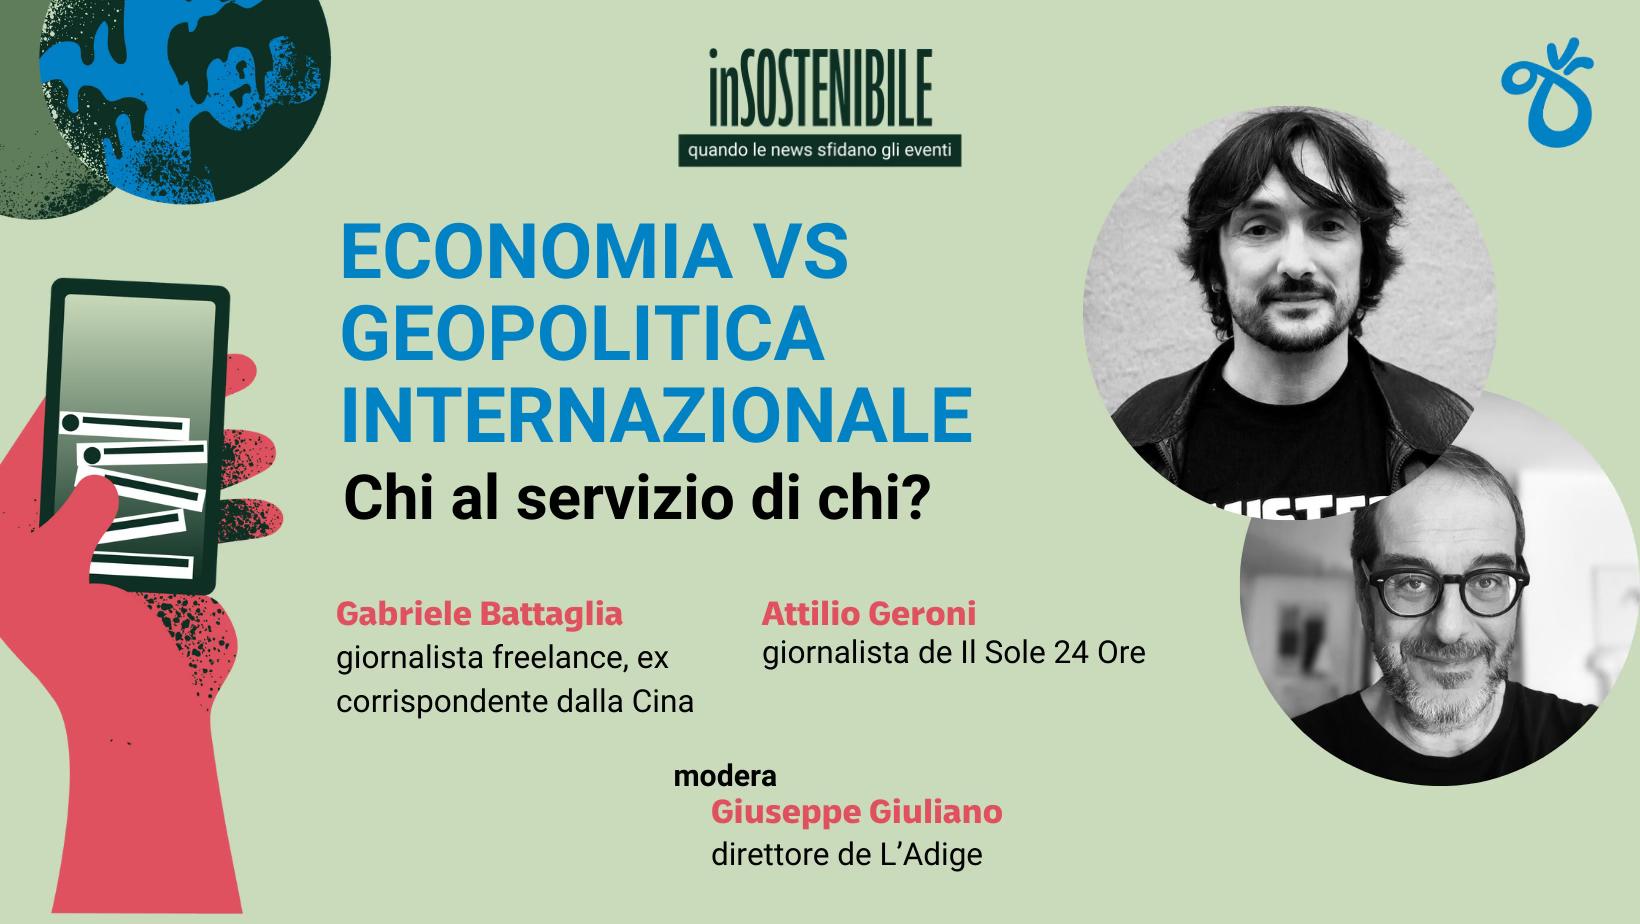 Festival del giornalismo, lunedì a Valgatara va in scena la geopolitica con Gabriele Battaglia e Attilio Geroni